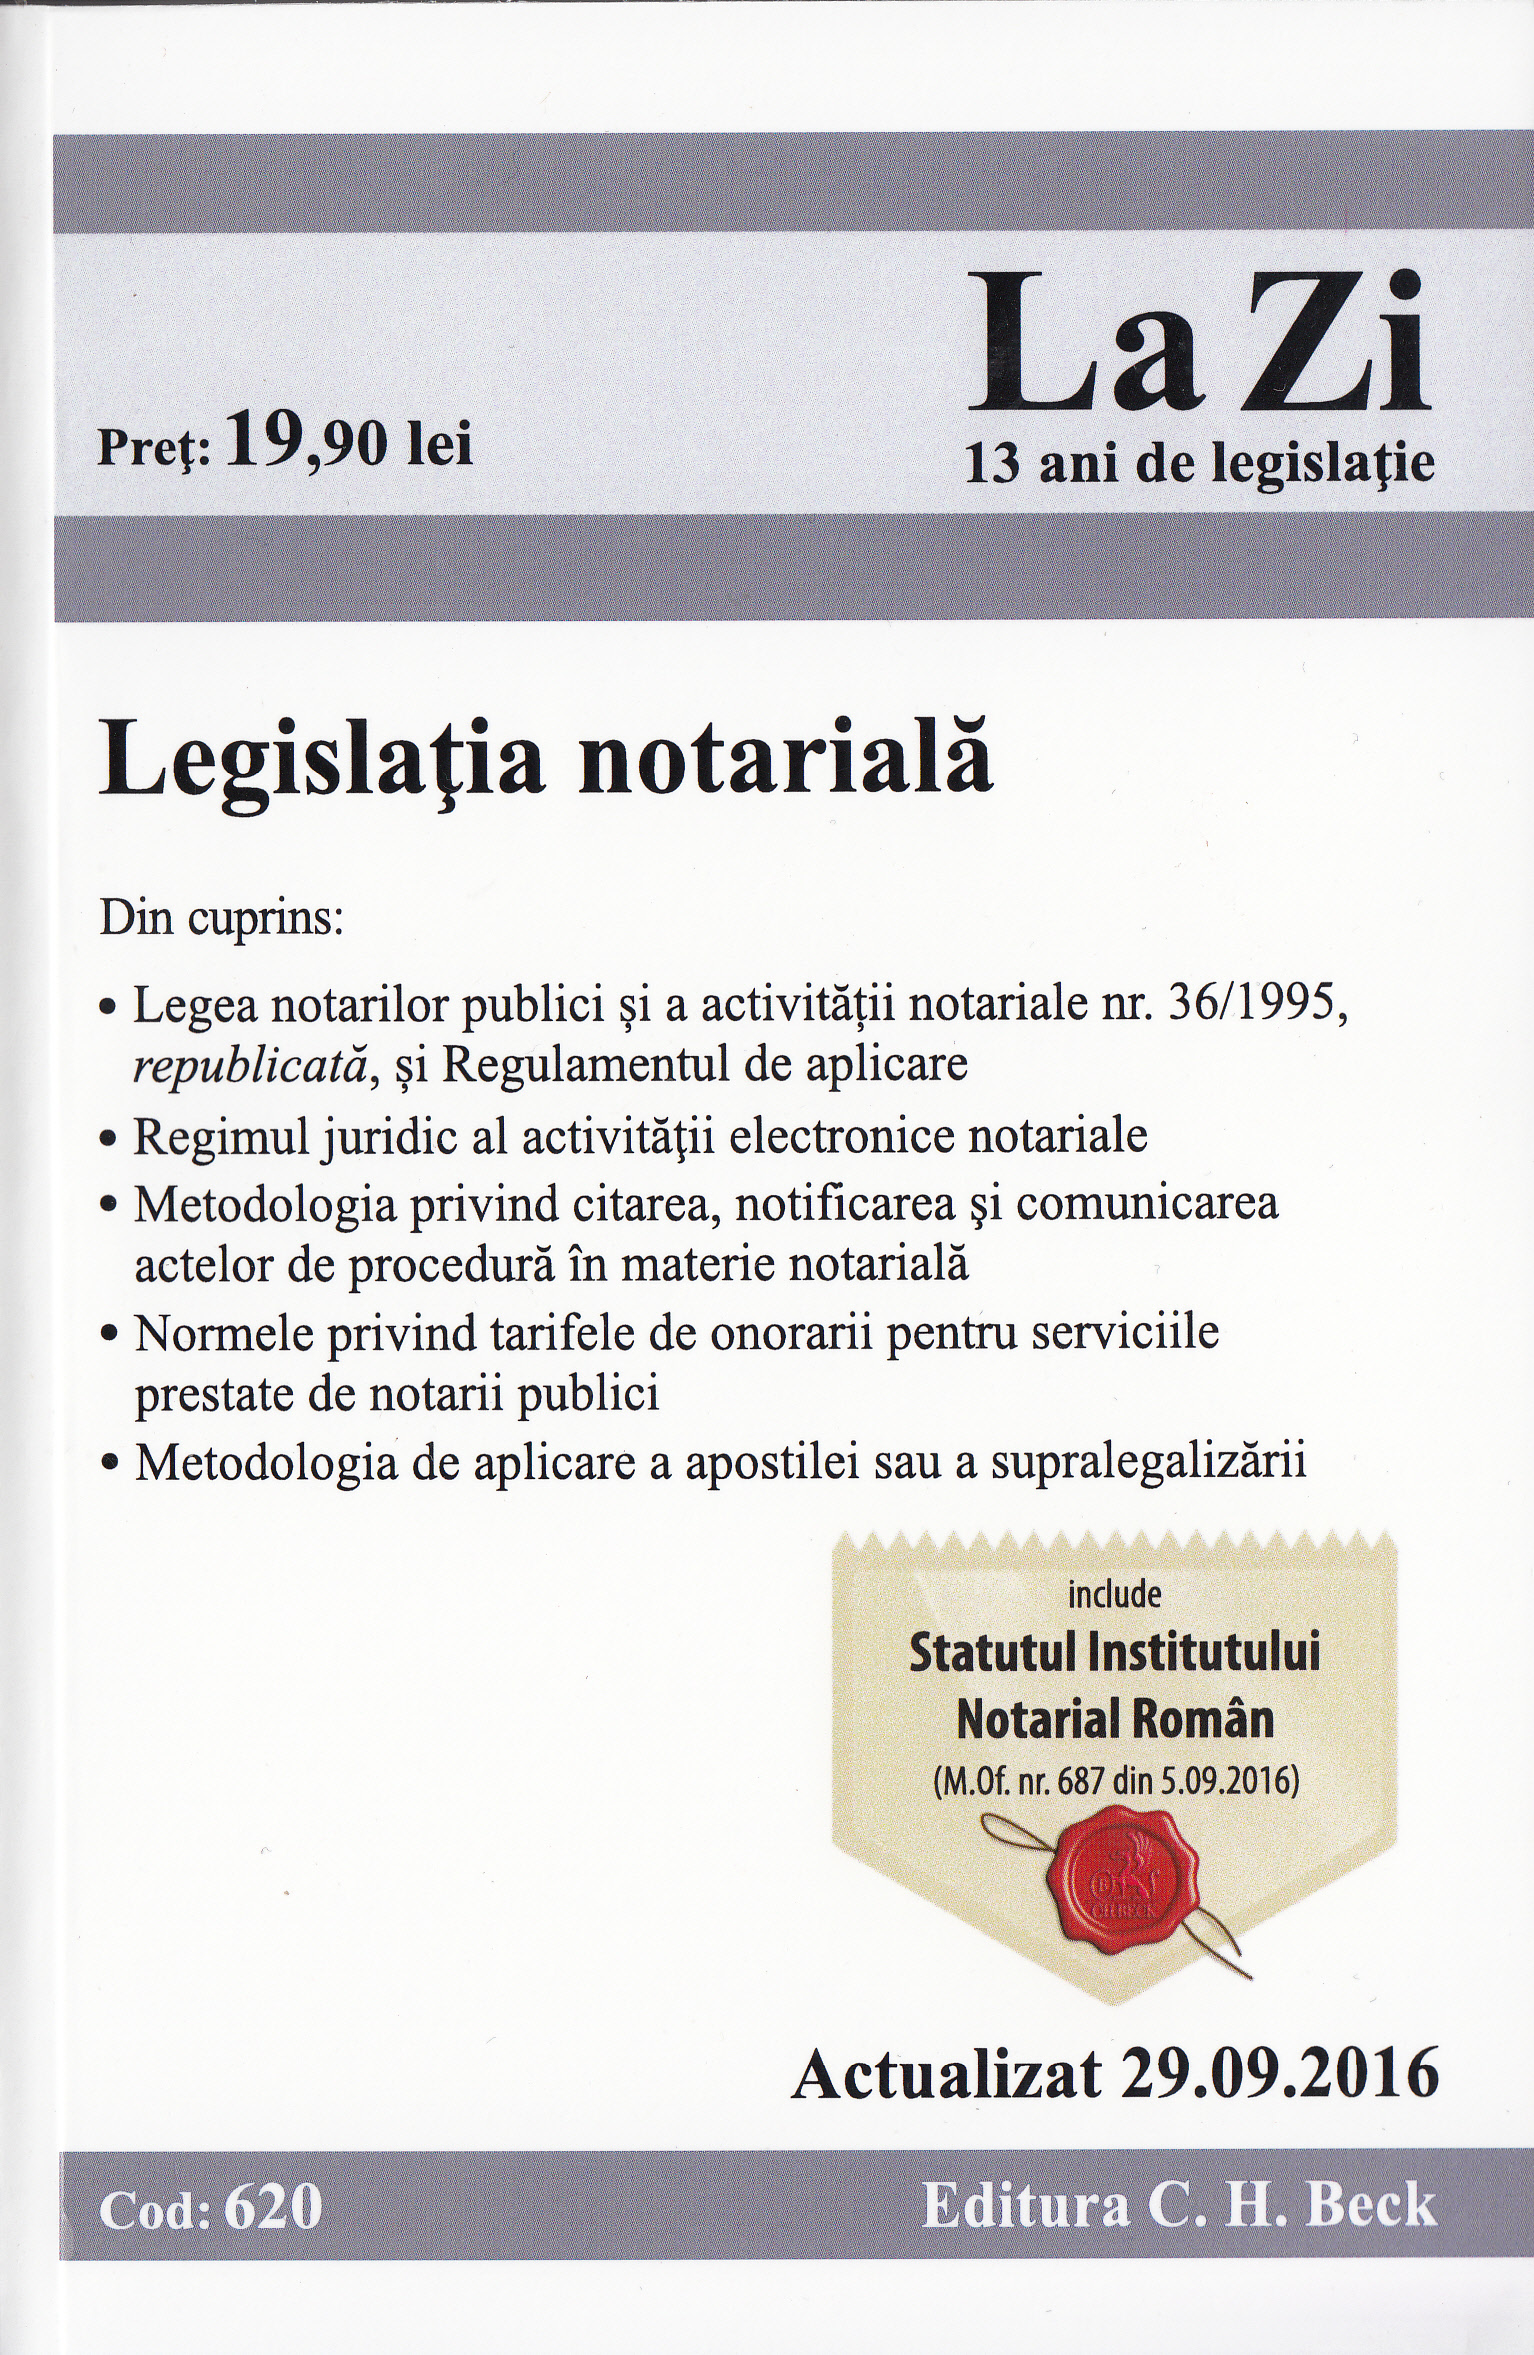 Legislatia notariala. Actualizata 29.09.2016